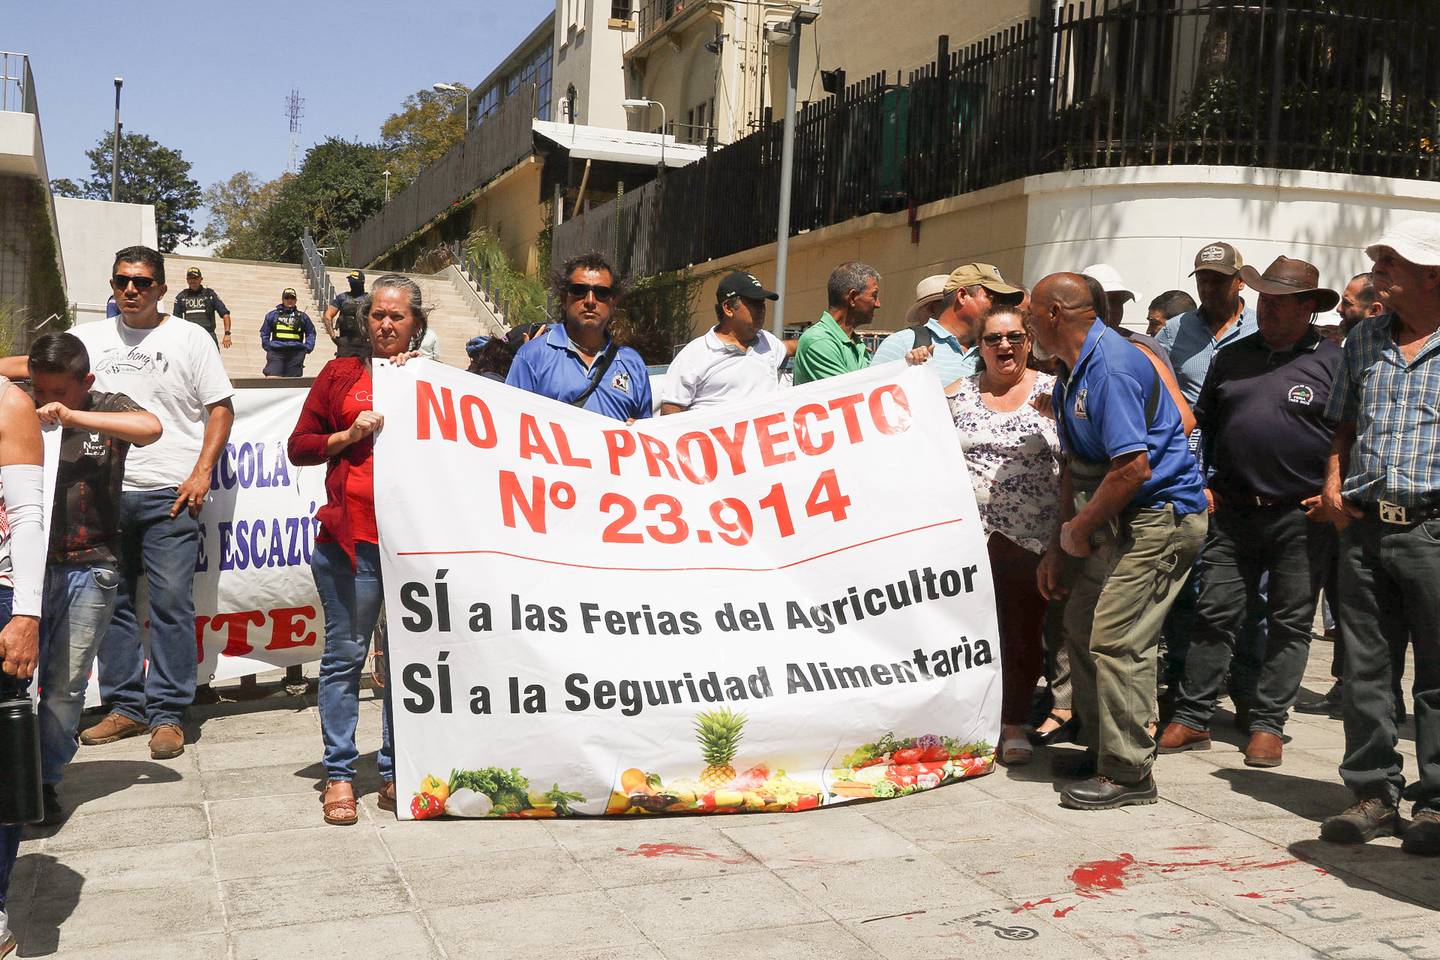 Marcha protesta, frene a la Asamblea Legislativa, de los productores agrícolas, por proyecto de Ley que establece que Ferias del Agricultor sean regidas por el Estado, actualmente son administradas por los productores.